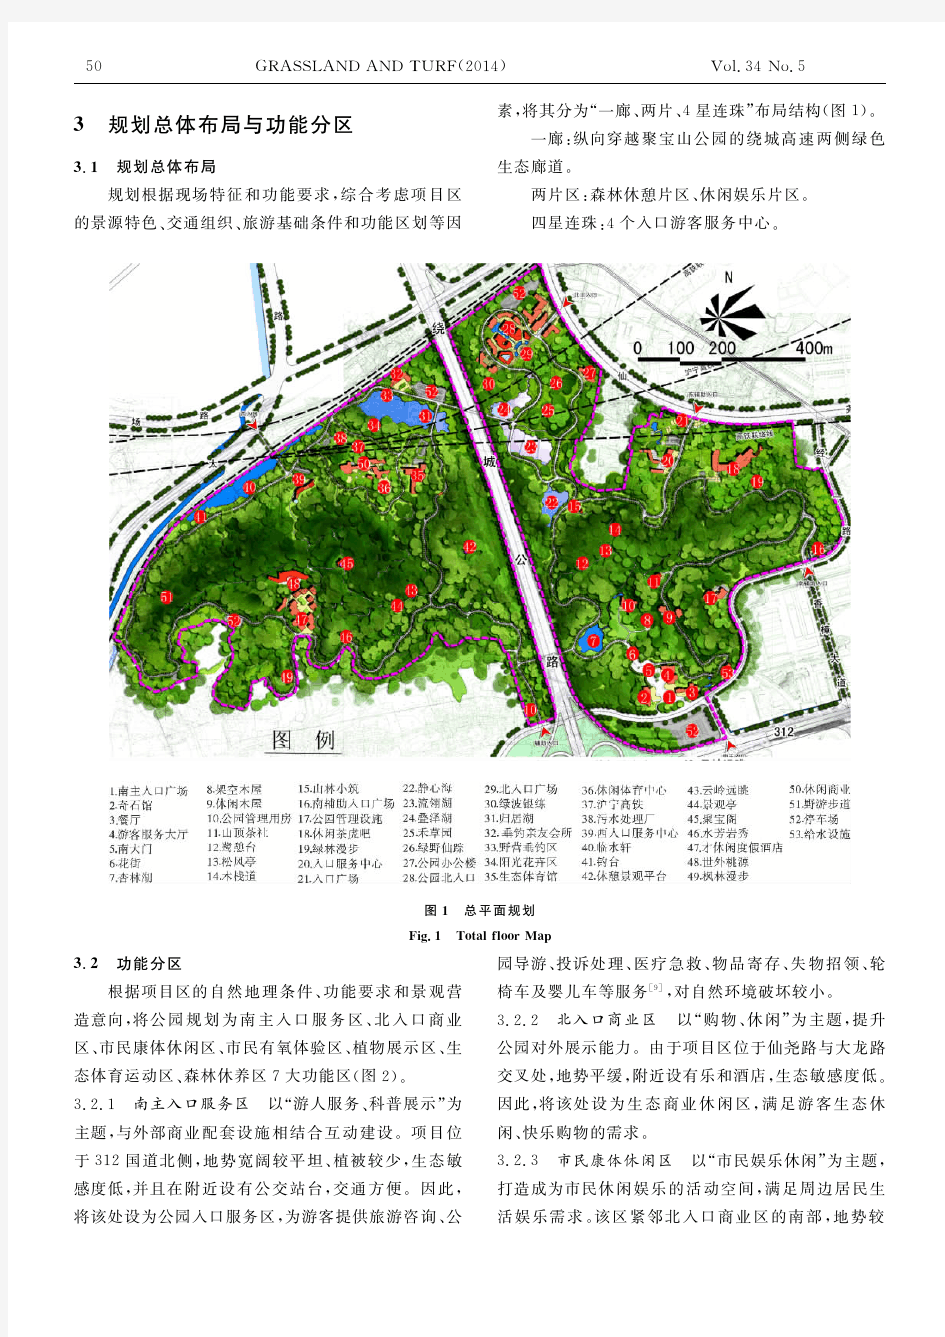 南京市聚宝山郊野公园总体规划设计分析